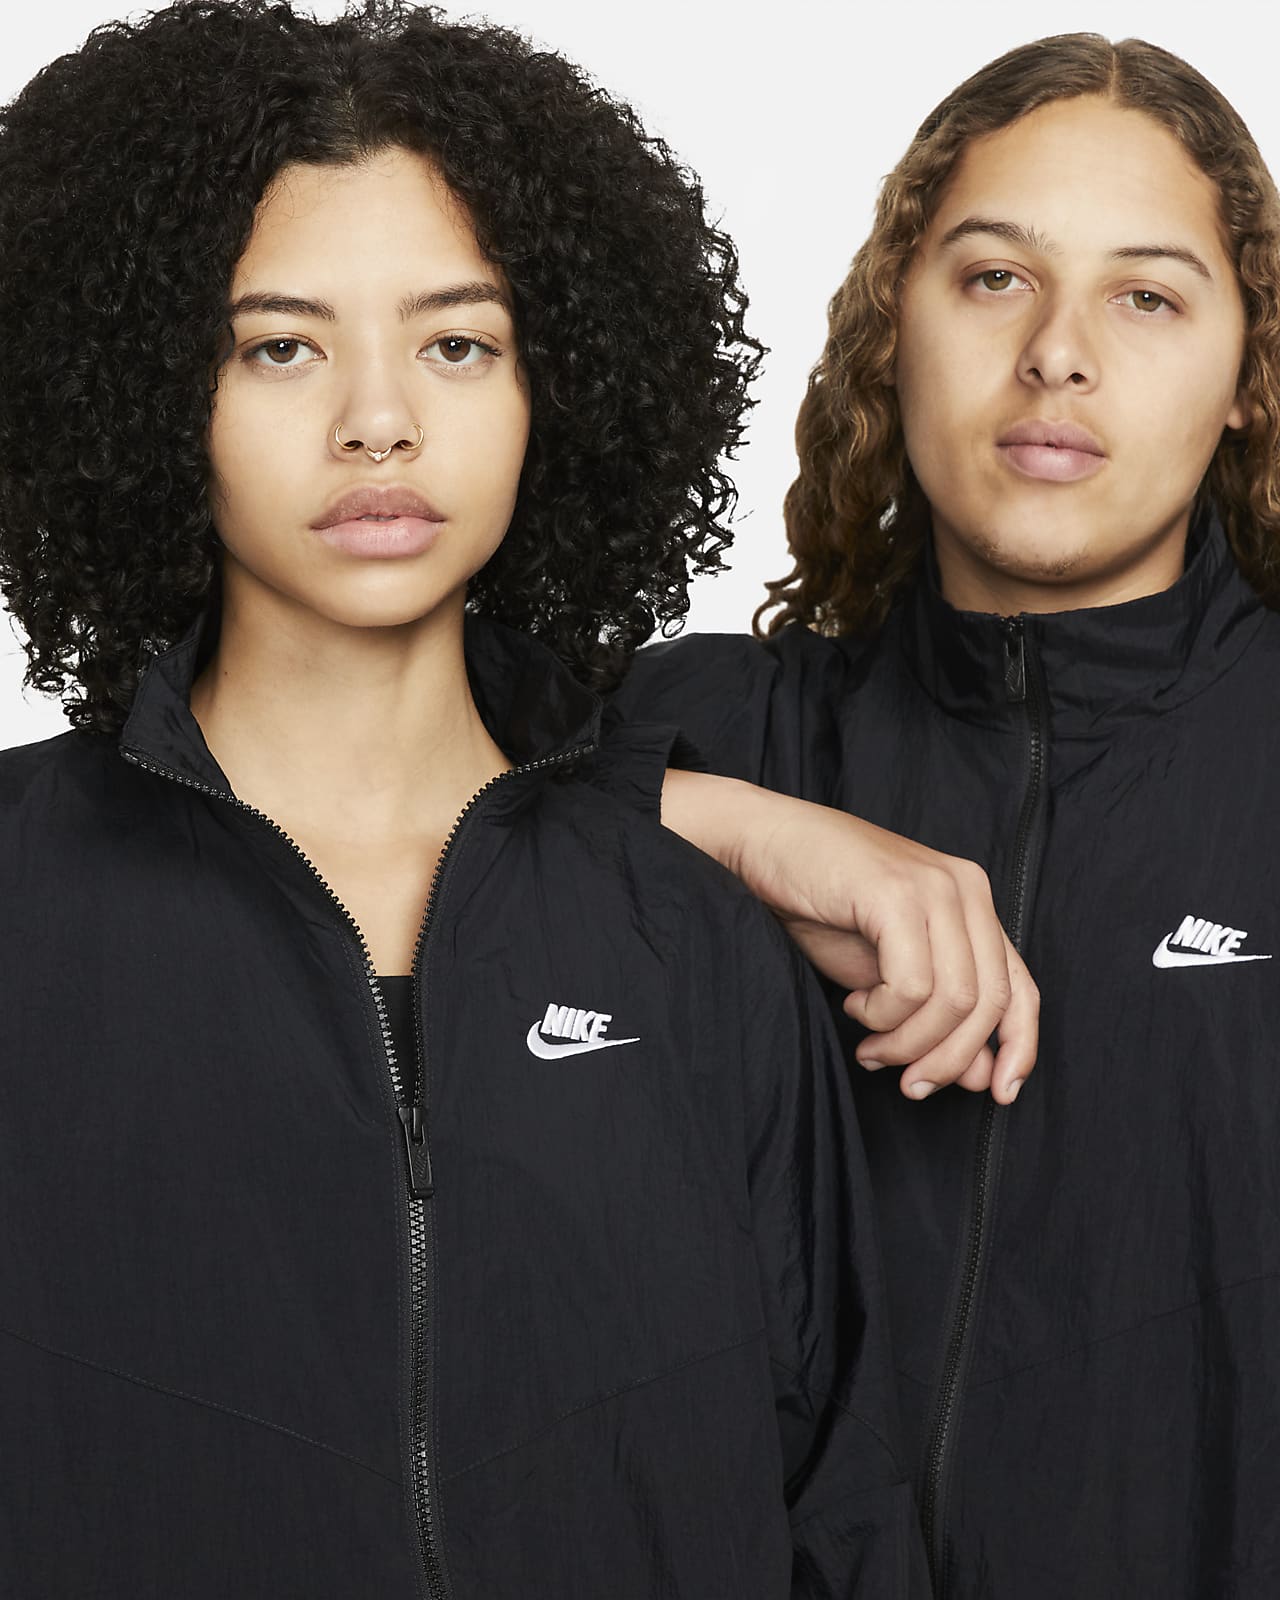 Nike Sportswear Essential Windrunner Women's Woven Jacket